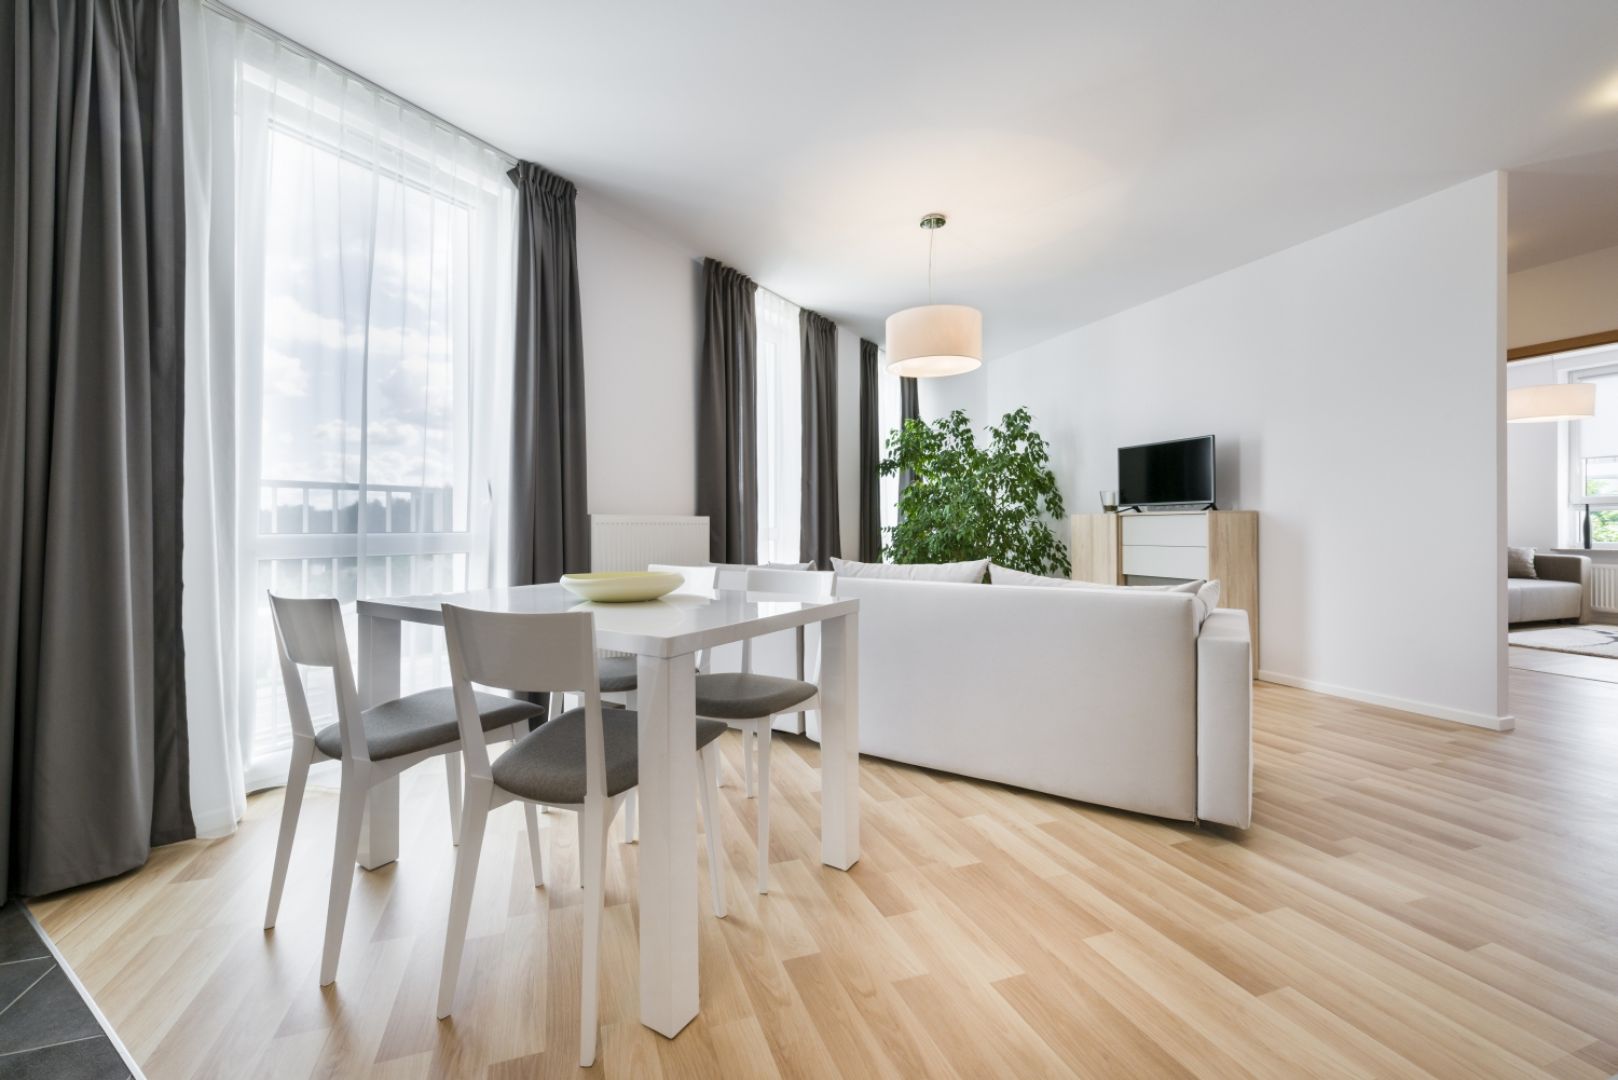 Drewniana podłoga, jasne meble, białe ściany i duże przeszklenia to typowe cechy stylu skandynawskiego. Fot. Shutterstock